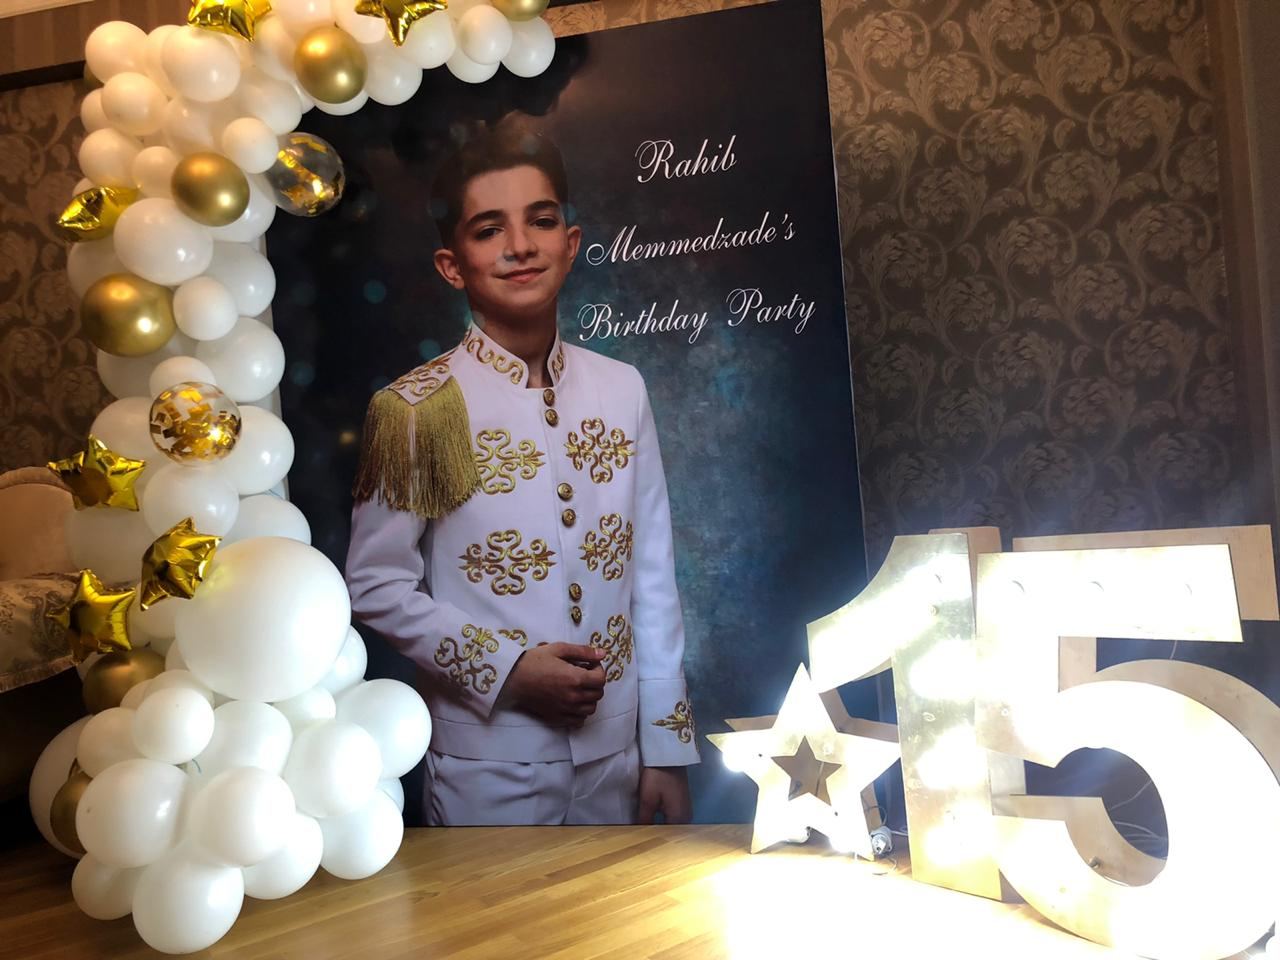 Рахиб Мамедзаде - "Маленький принц" большой сцены. От мечты стать летчиком до популярного актера  (ФОТО)